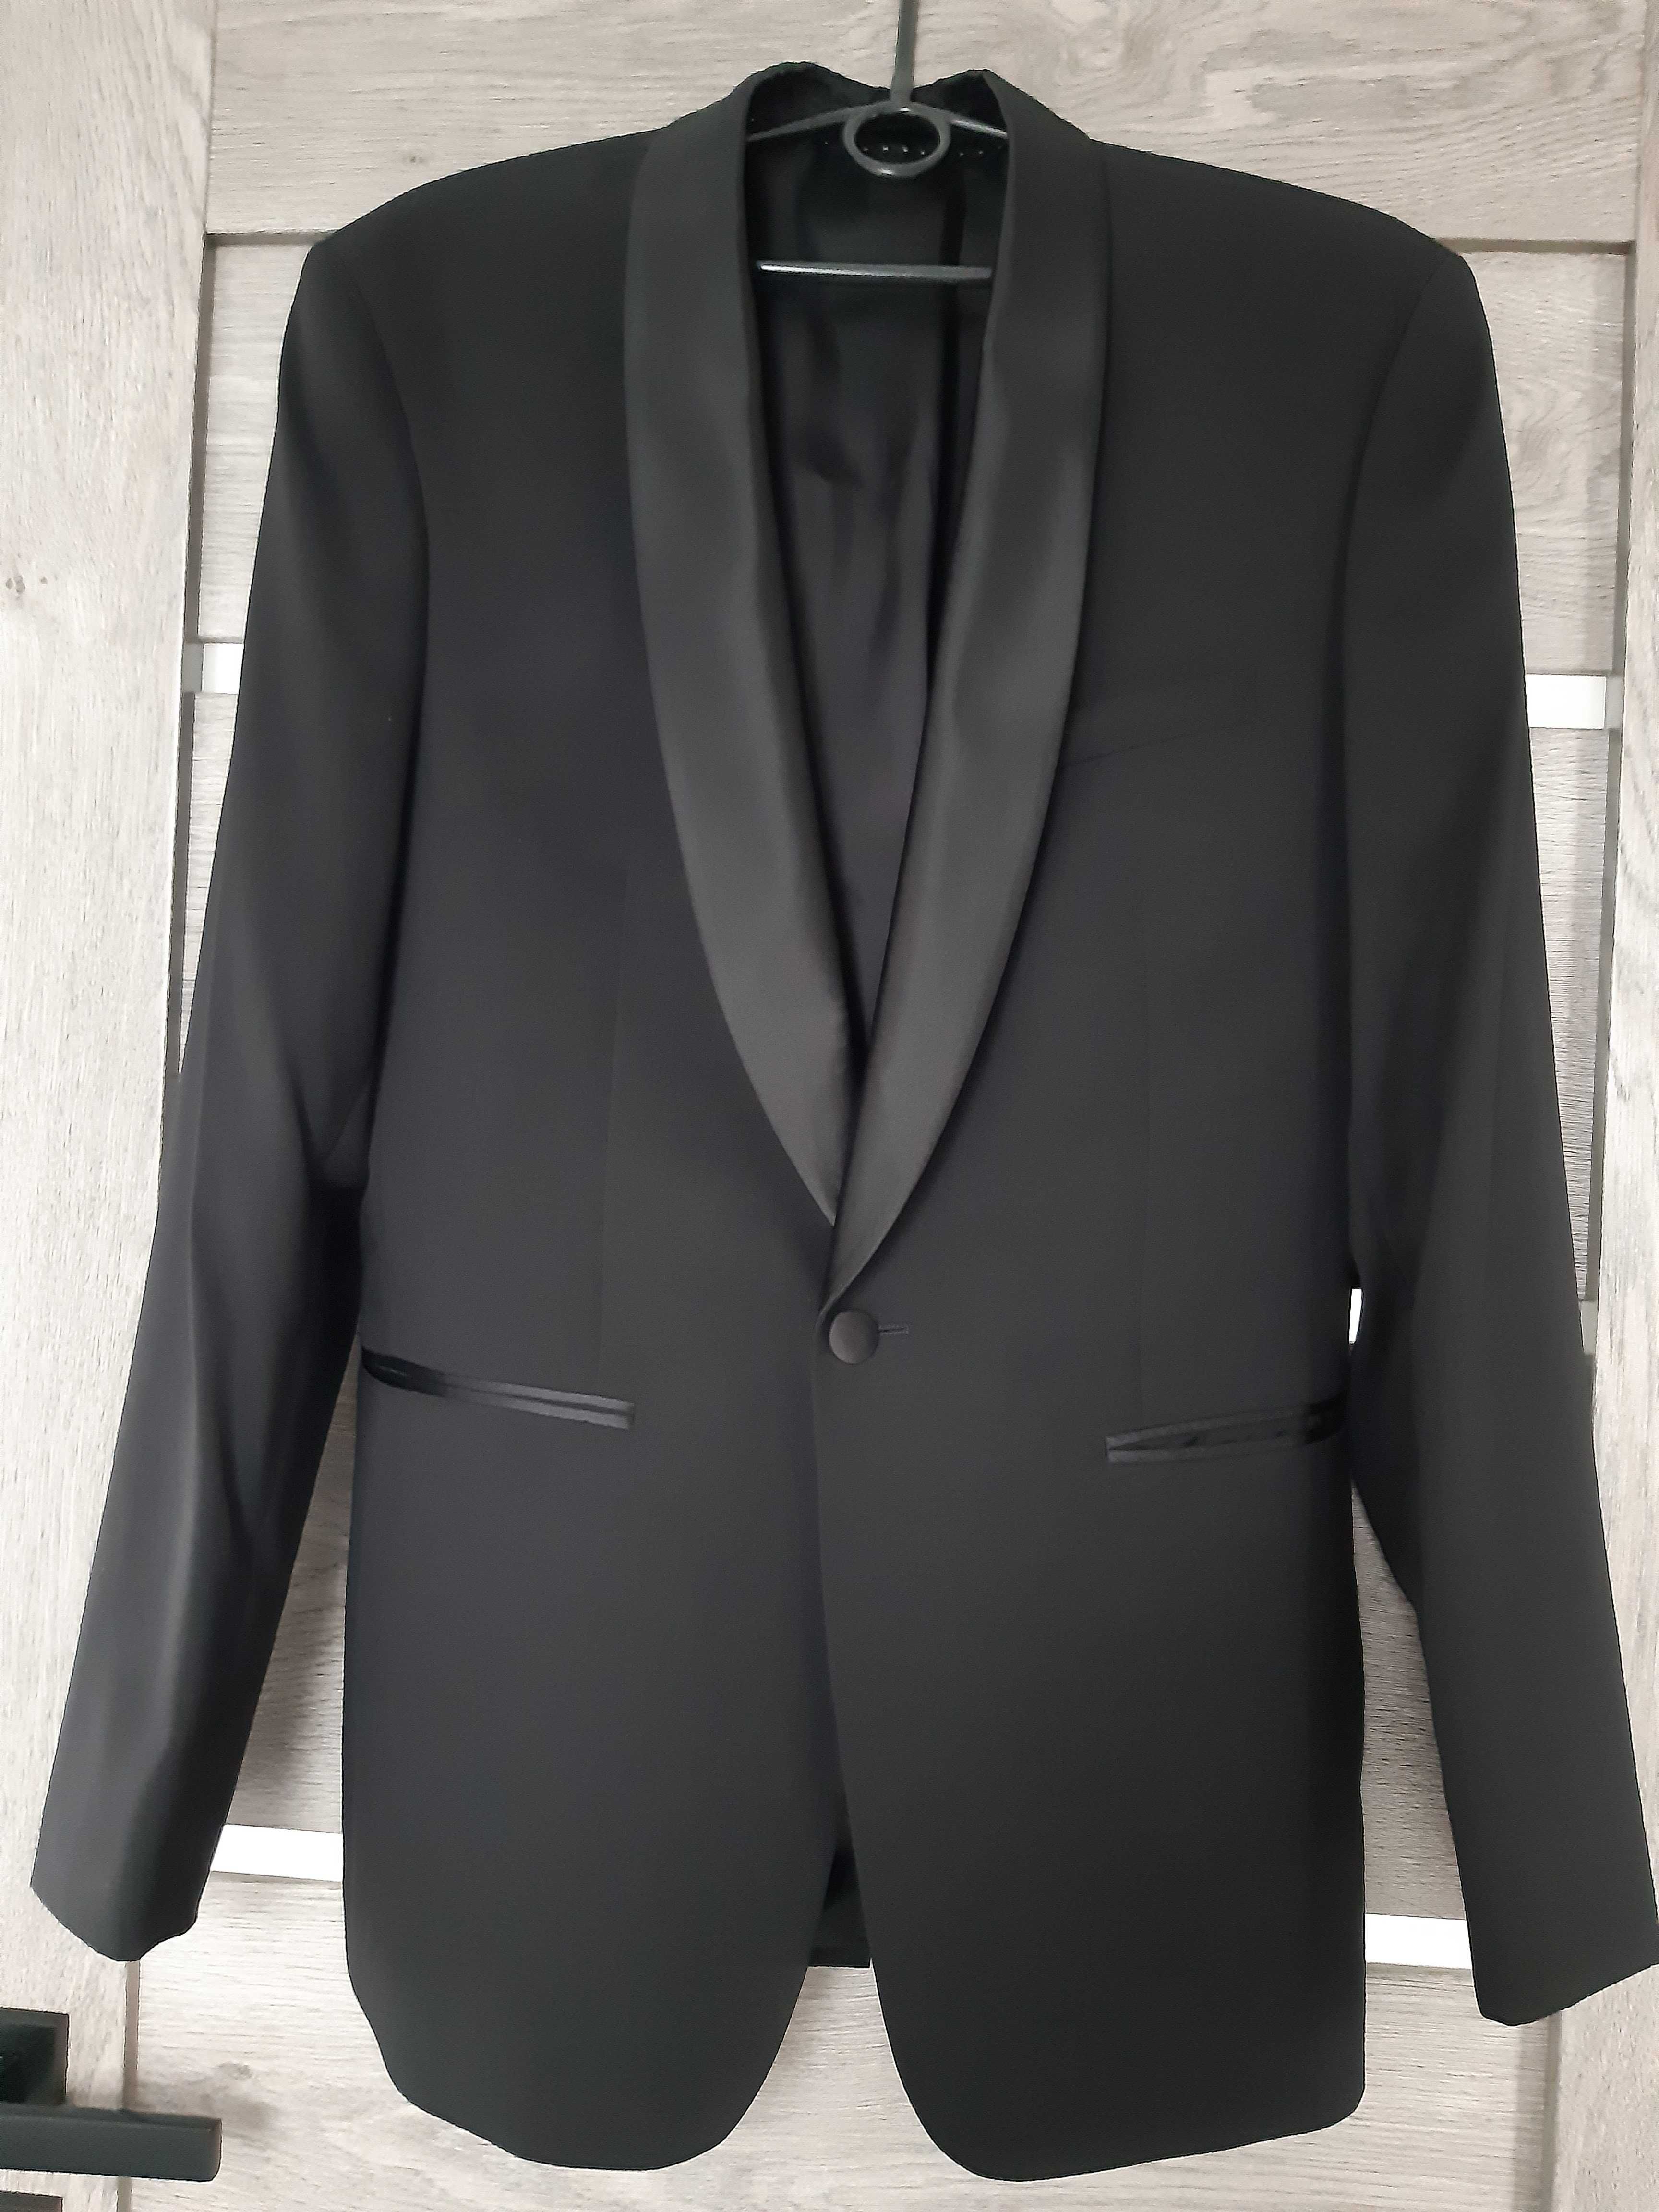 Zestaw z Giacomo Conti: czarny garnitur, koszula i dodatki. Rozmiar M